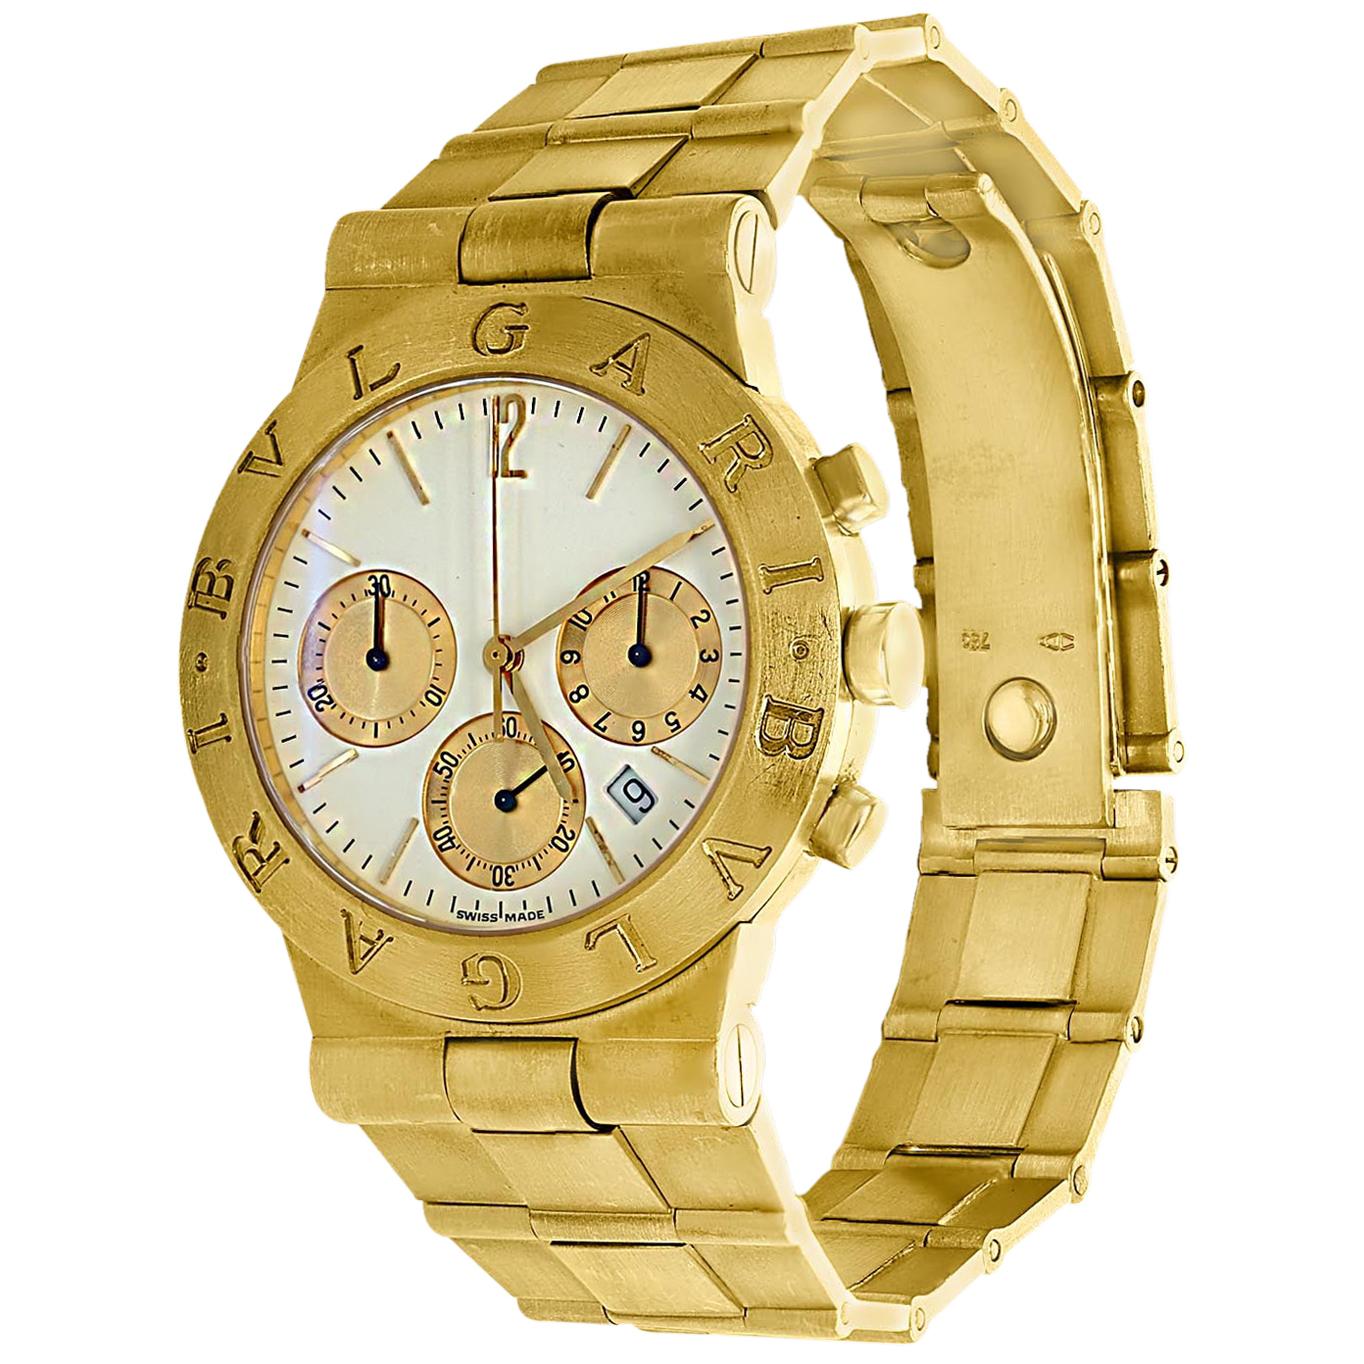 165 Gm 18 Karat Yellow Gold Bvlgari Chrono Watch Unisex Bvlgari Logo Watch